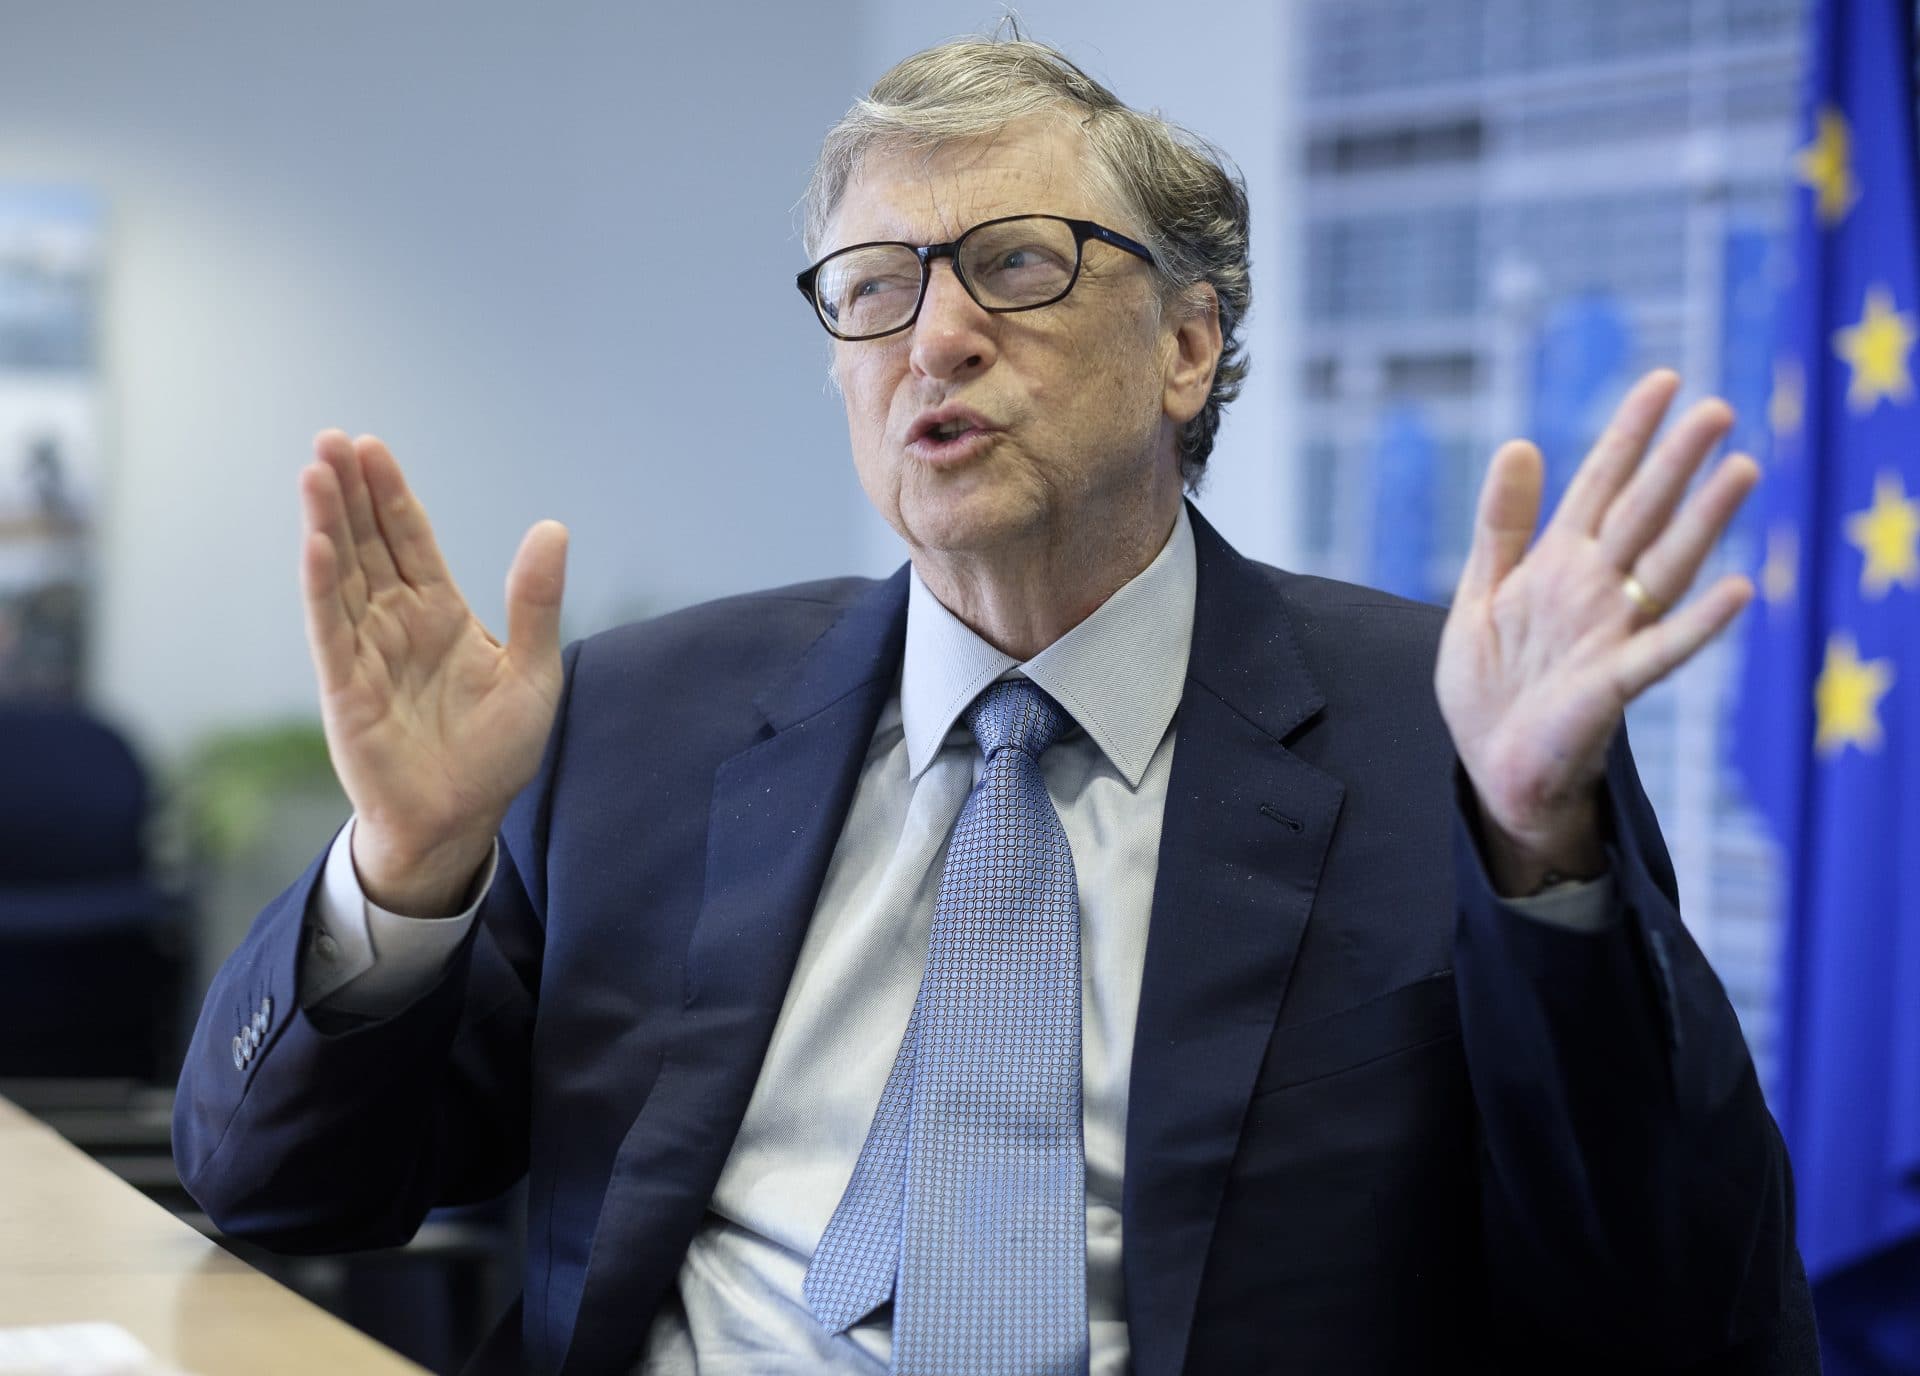 Bill Gates a făcut o declarație care ne sperie. ”Este o tragedie incredibilă”